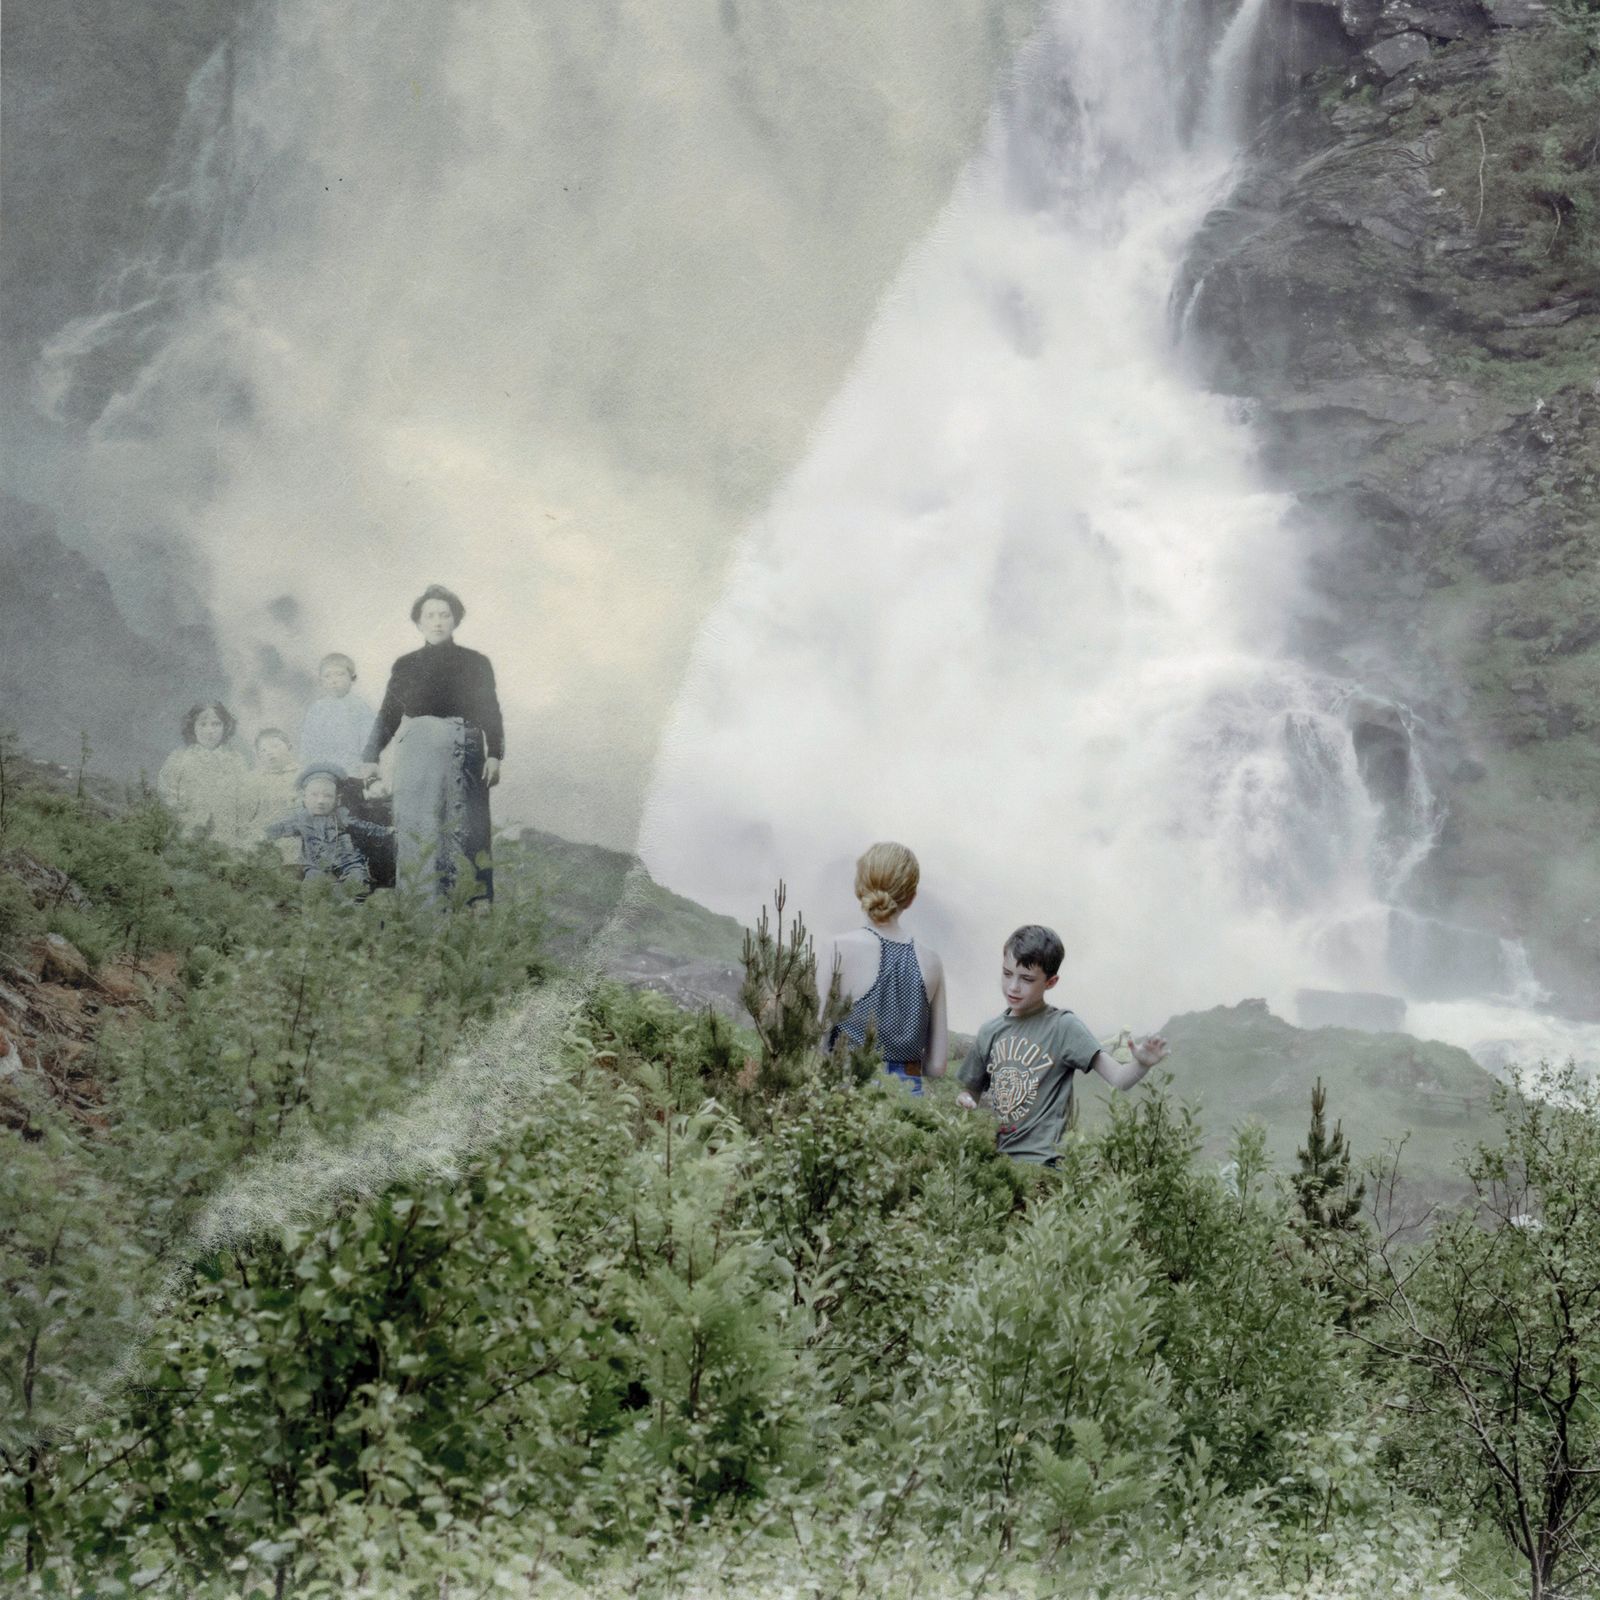 © Diana Cheren Nygren - Before the Waterfall